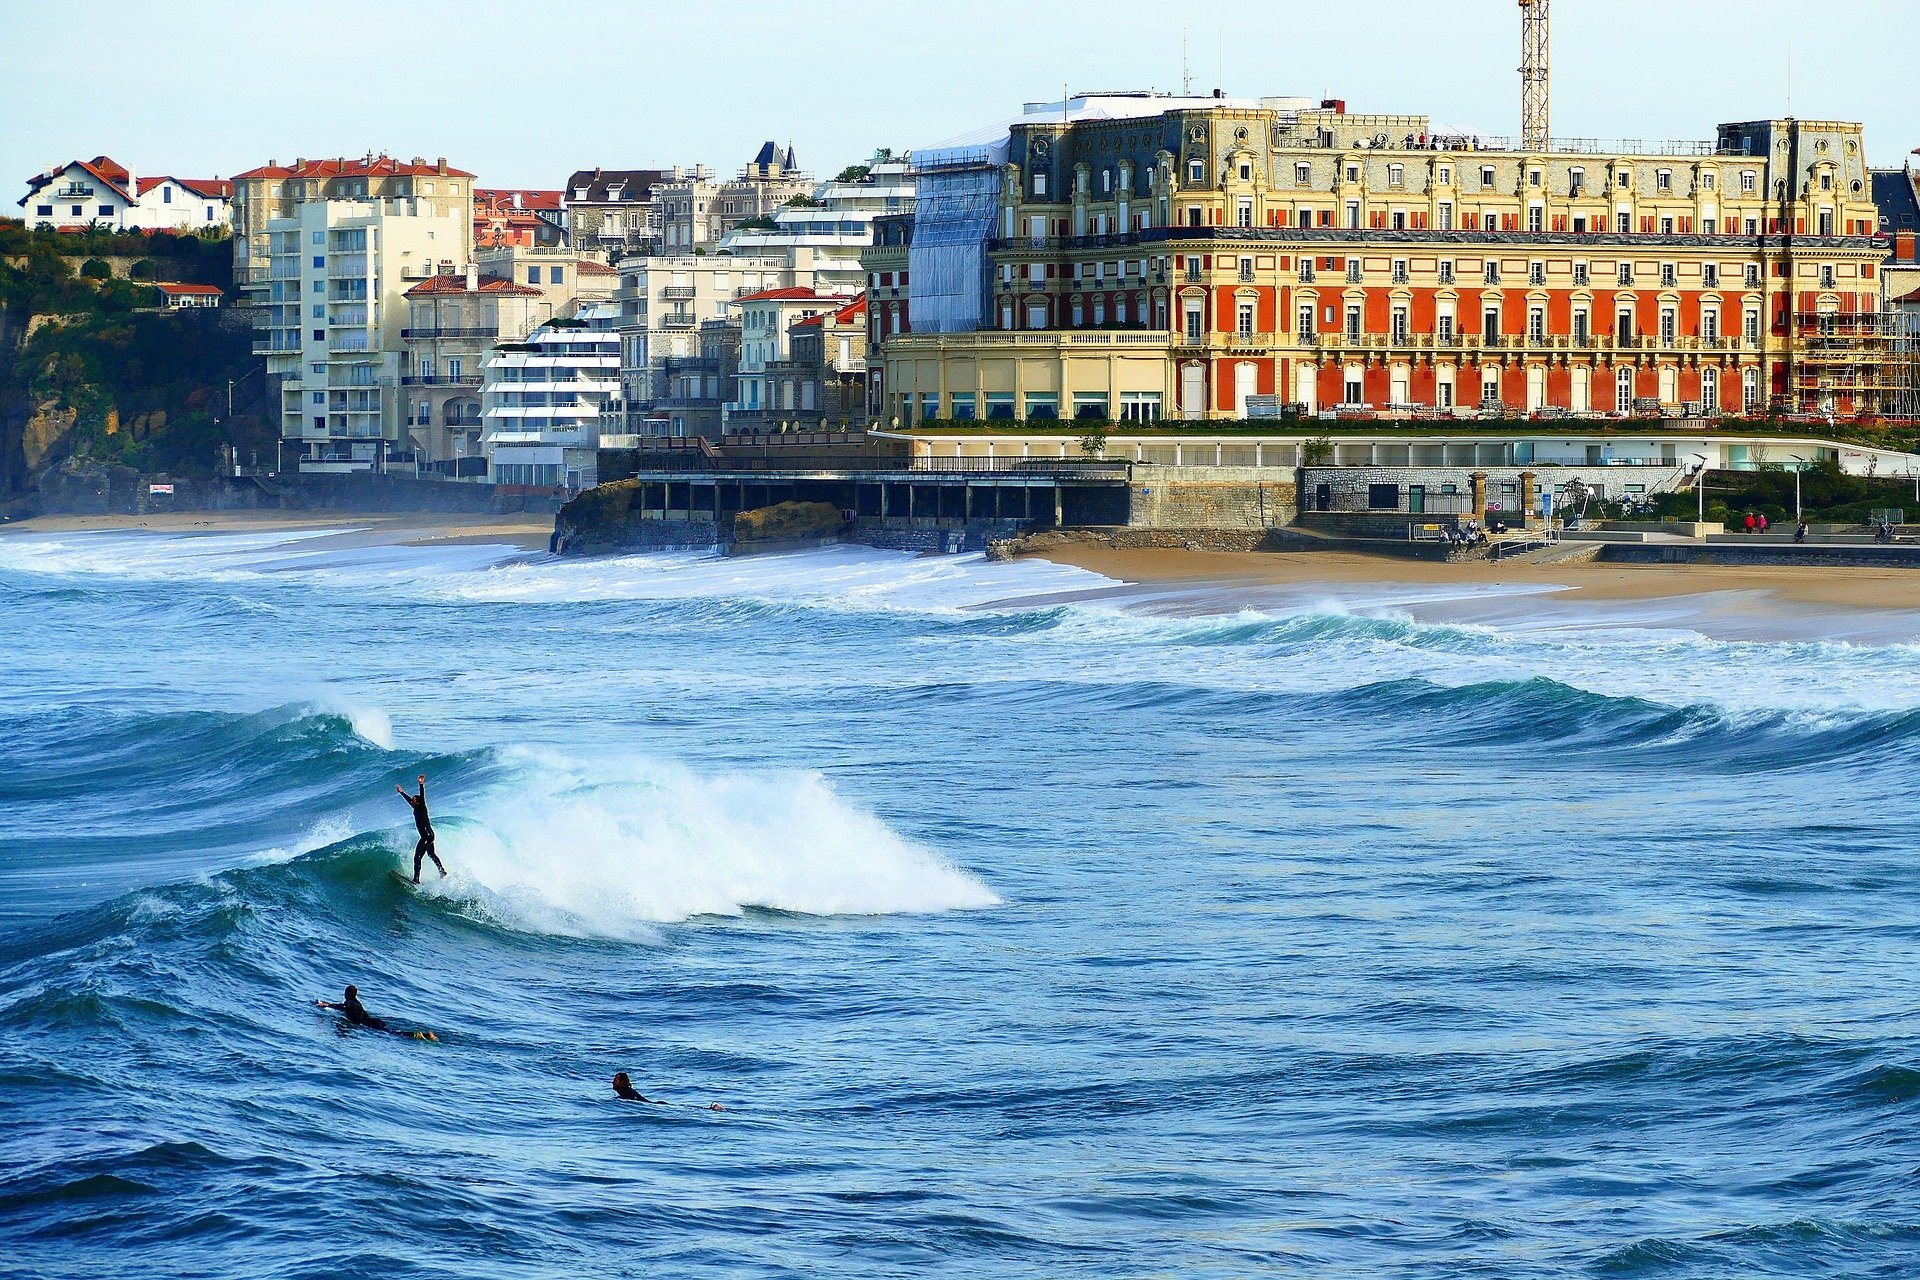 biarritz surf